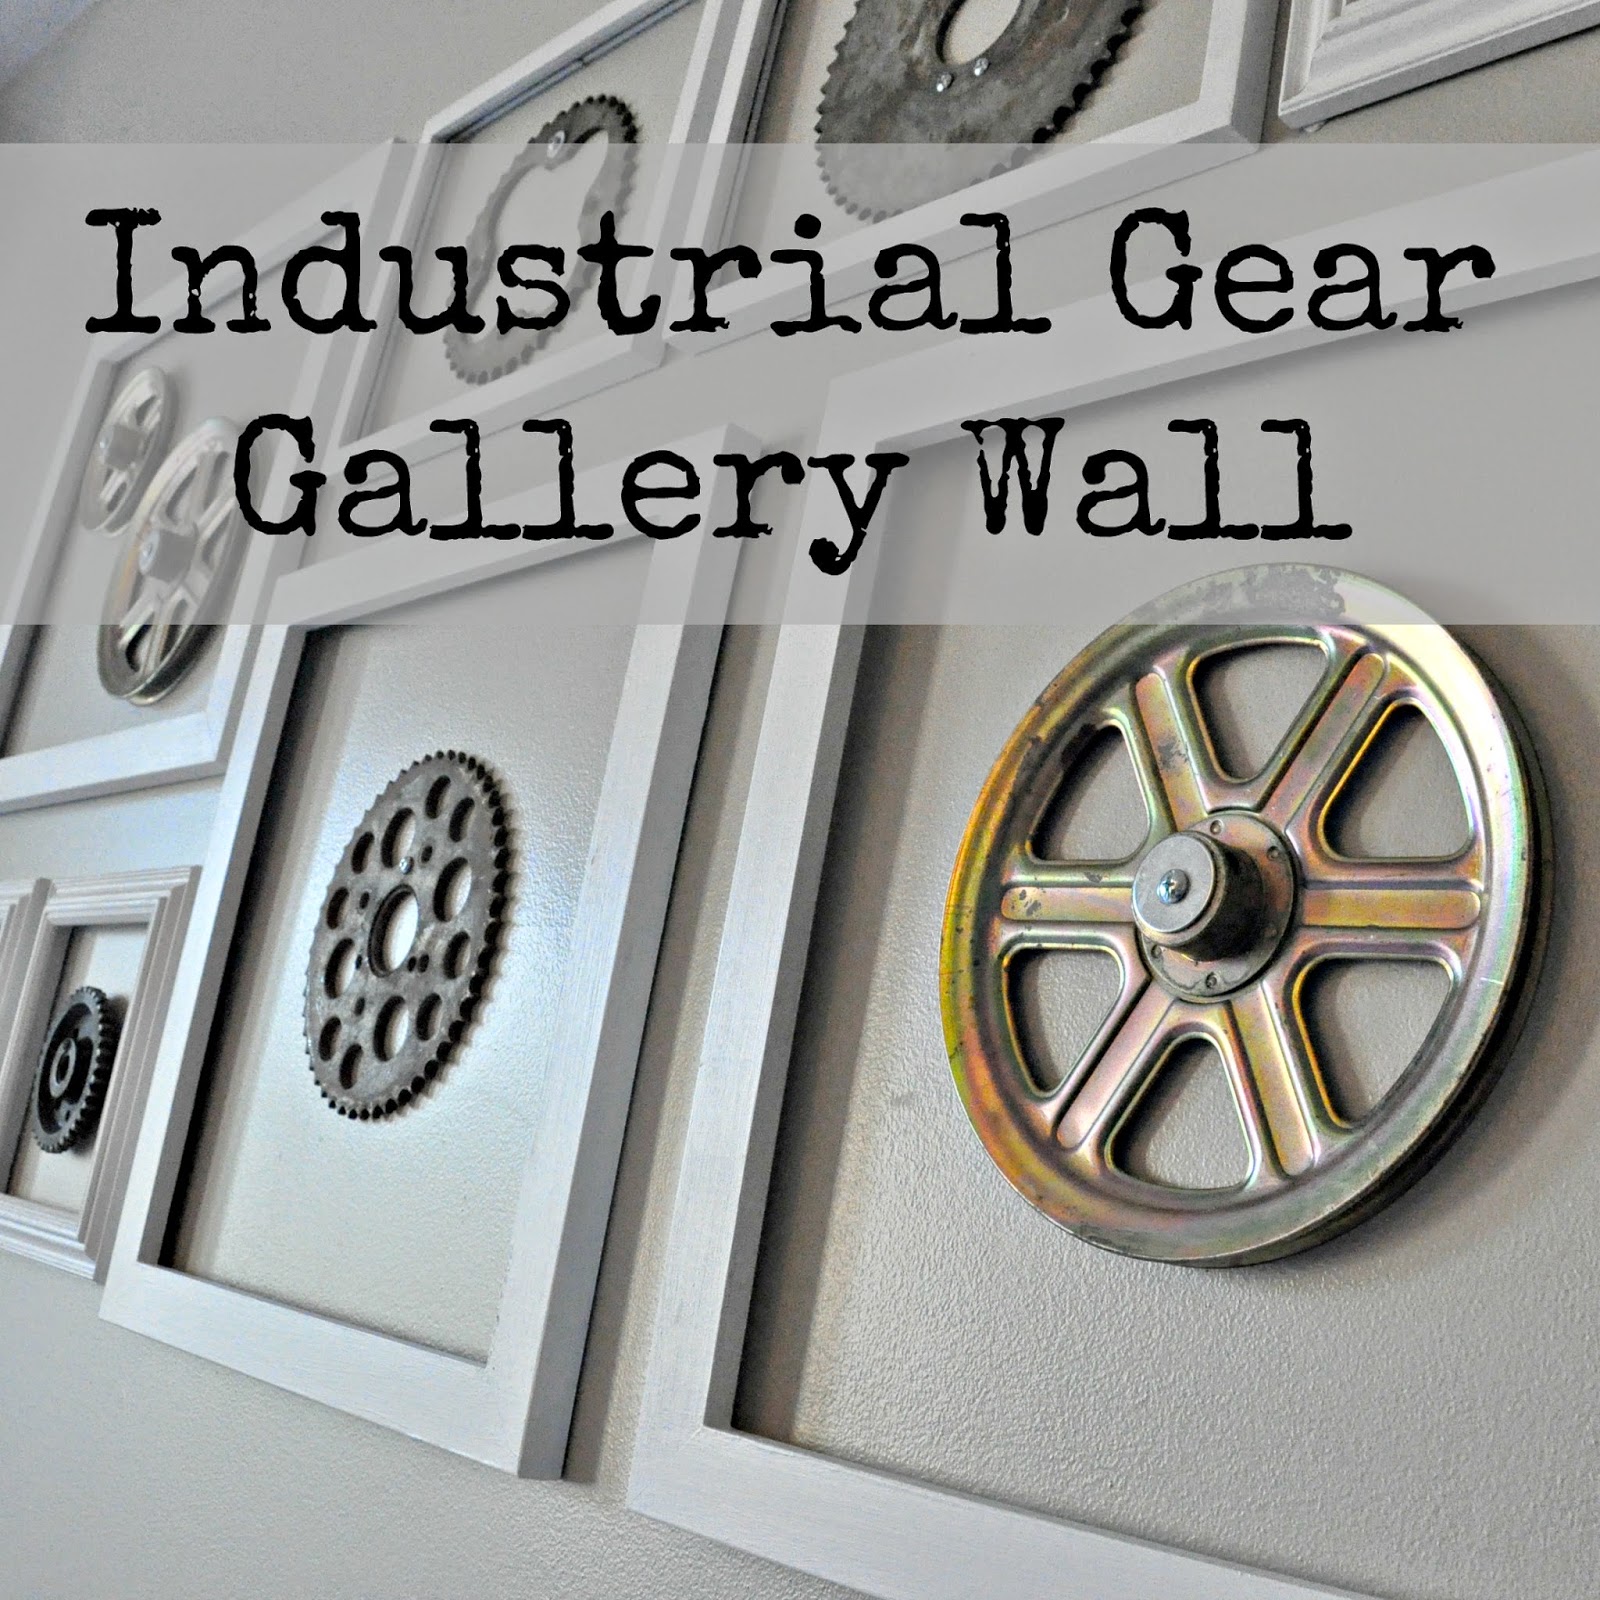 Industrial Gear Gallery Wall